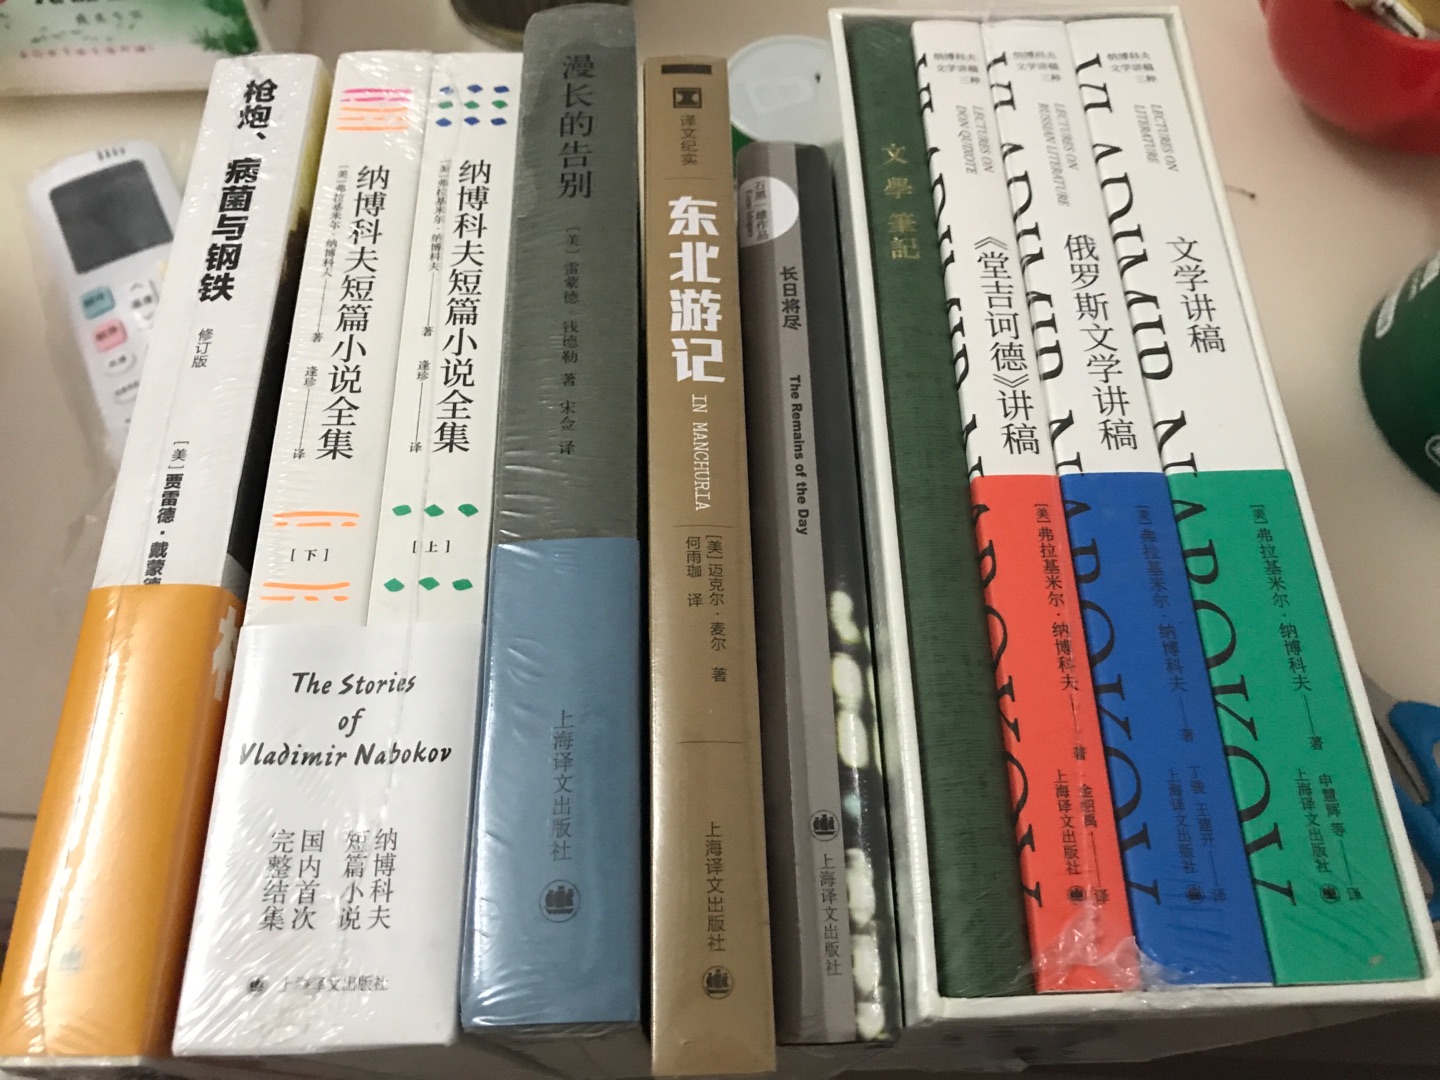 我就是上海译文的死忠粉啊！虽然出版社好多文集都圈钱，但是架不住喜欢啊！…！